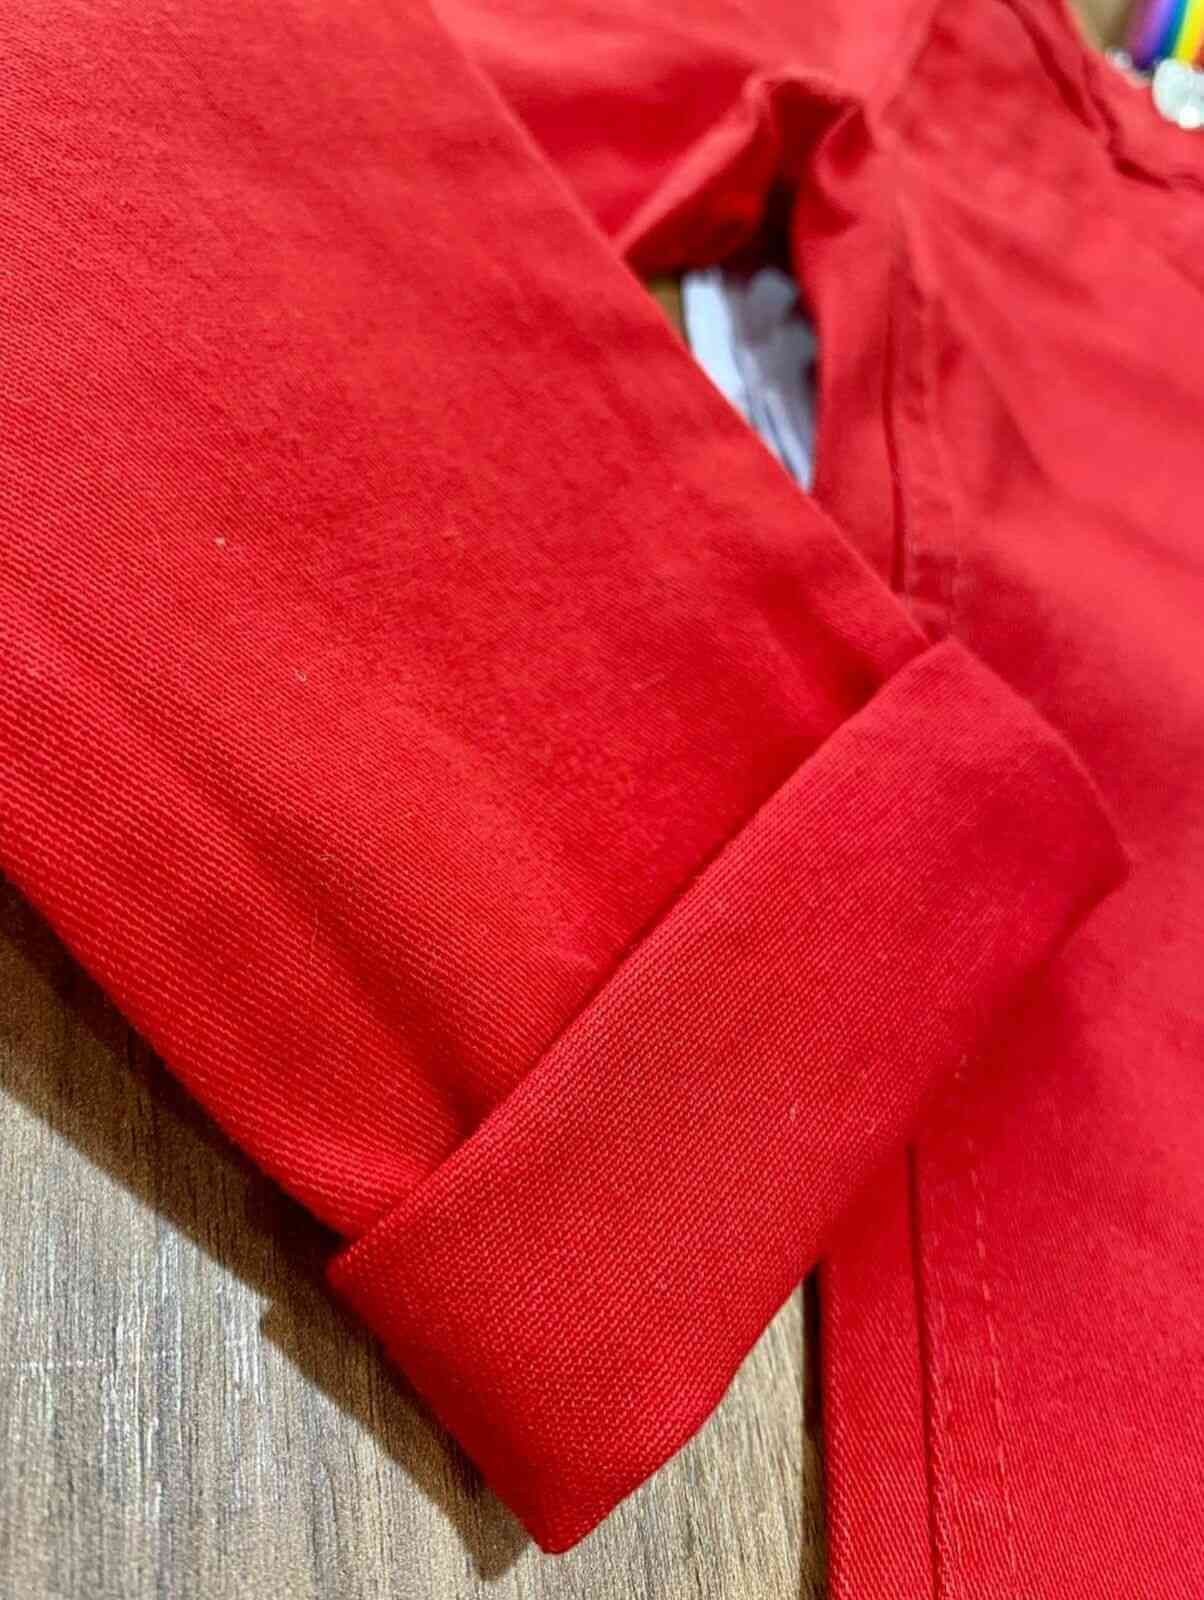 Camisa Manga Longa com Calça Vermelha Infantil